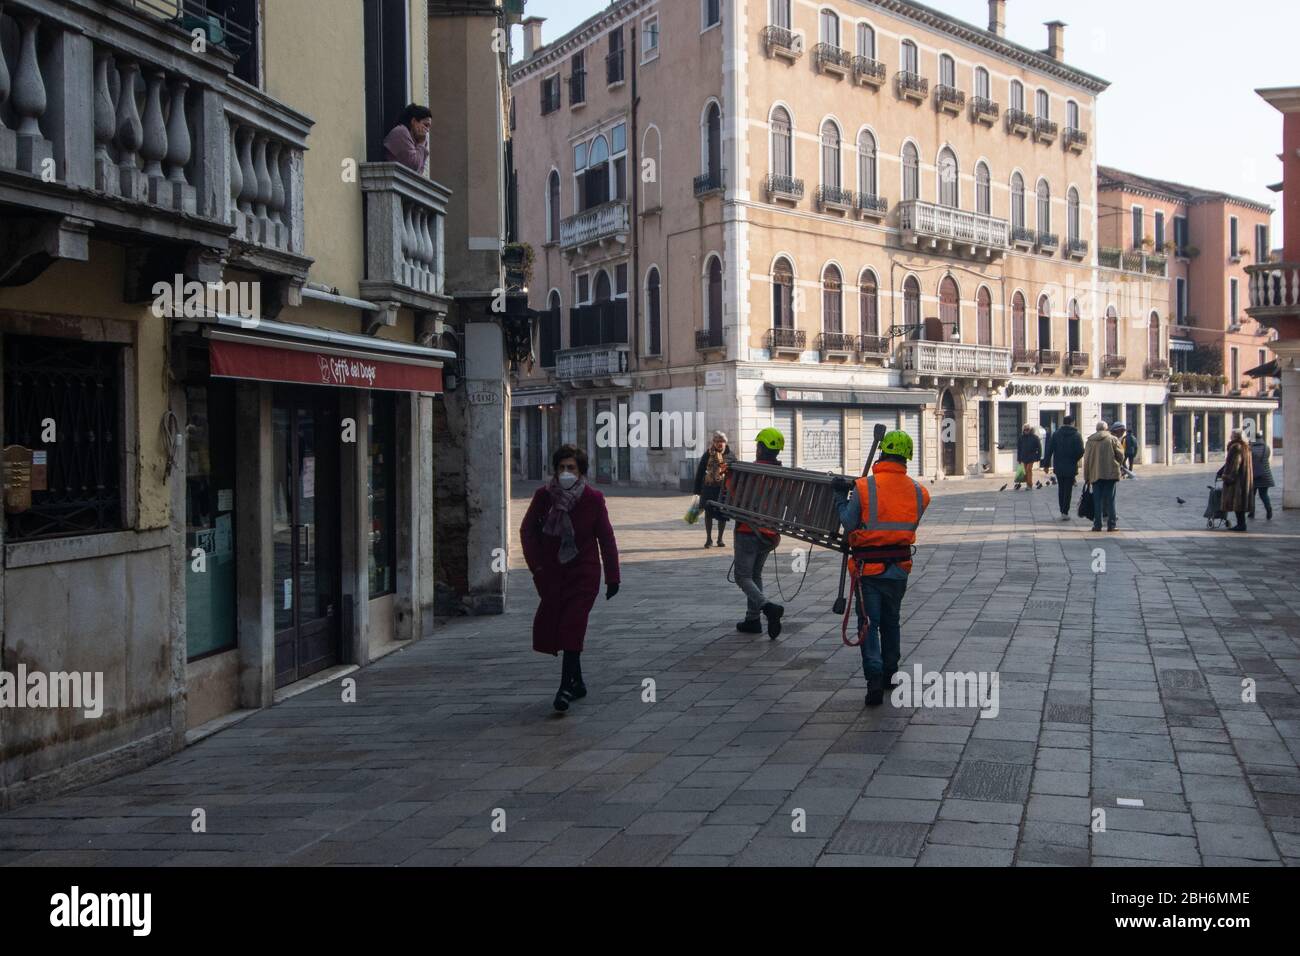 VENEZIA, ITALIA - APRILE 2020: La gente cammina in strade quasi vuote durante la chiusura nazionale per la pandemia di Covid-19. Foto Stock